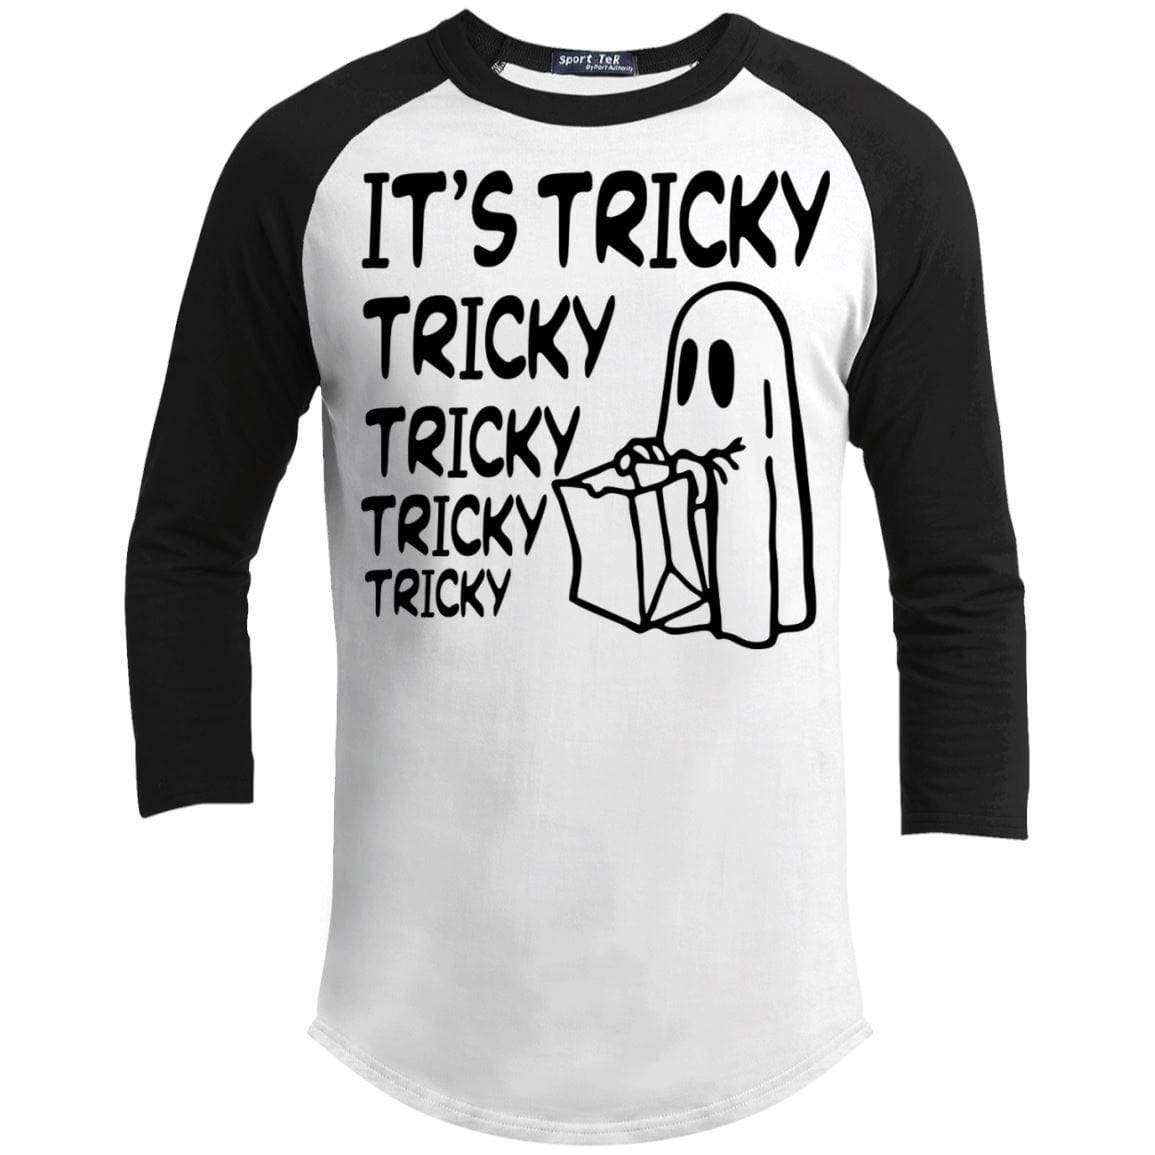 It's Tricky Tricky Tricky Tricky Raglan T-Shirts CustomCat White/Black X-Small 